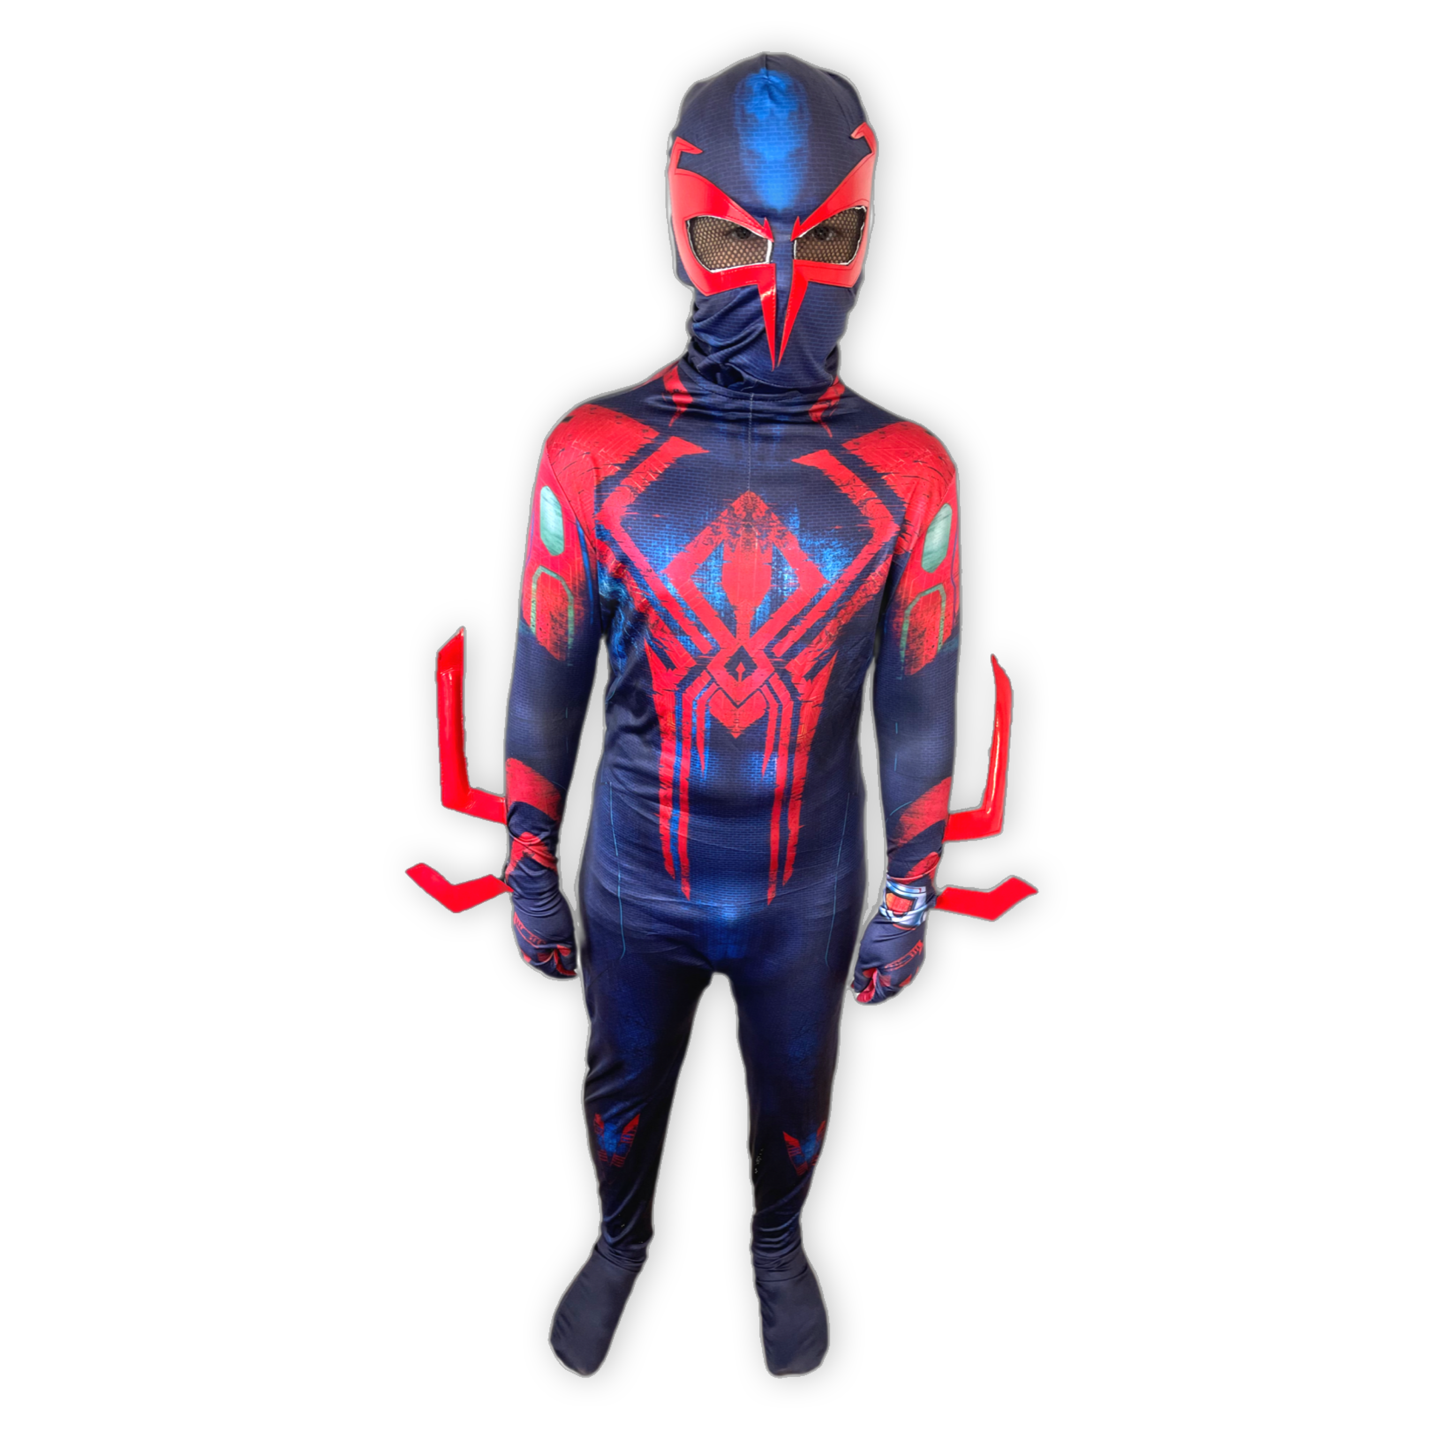 Spider-Man 2099 Miguel